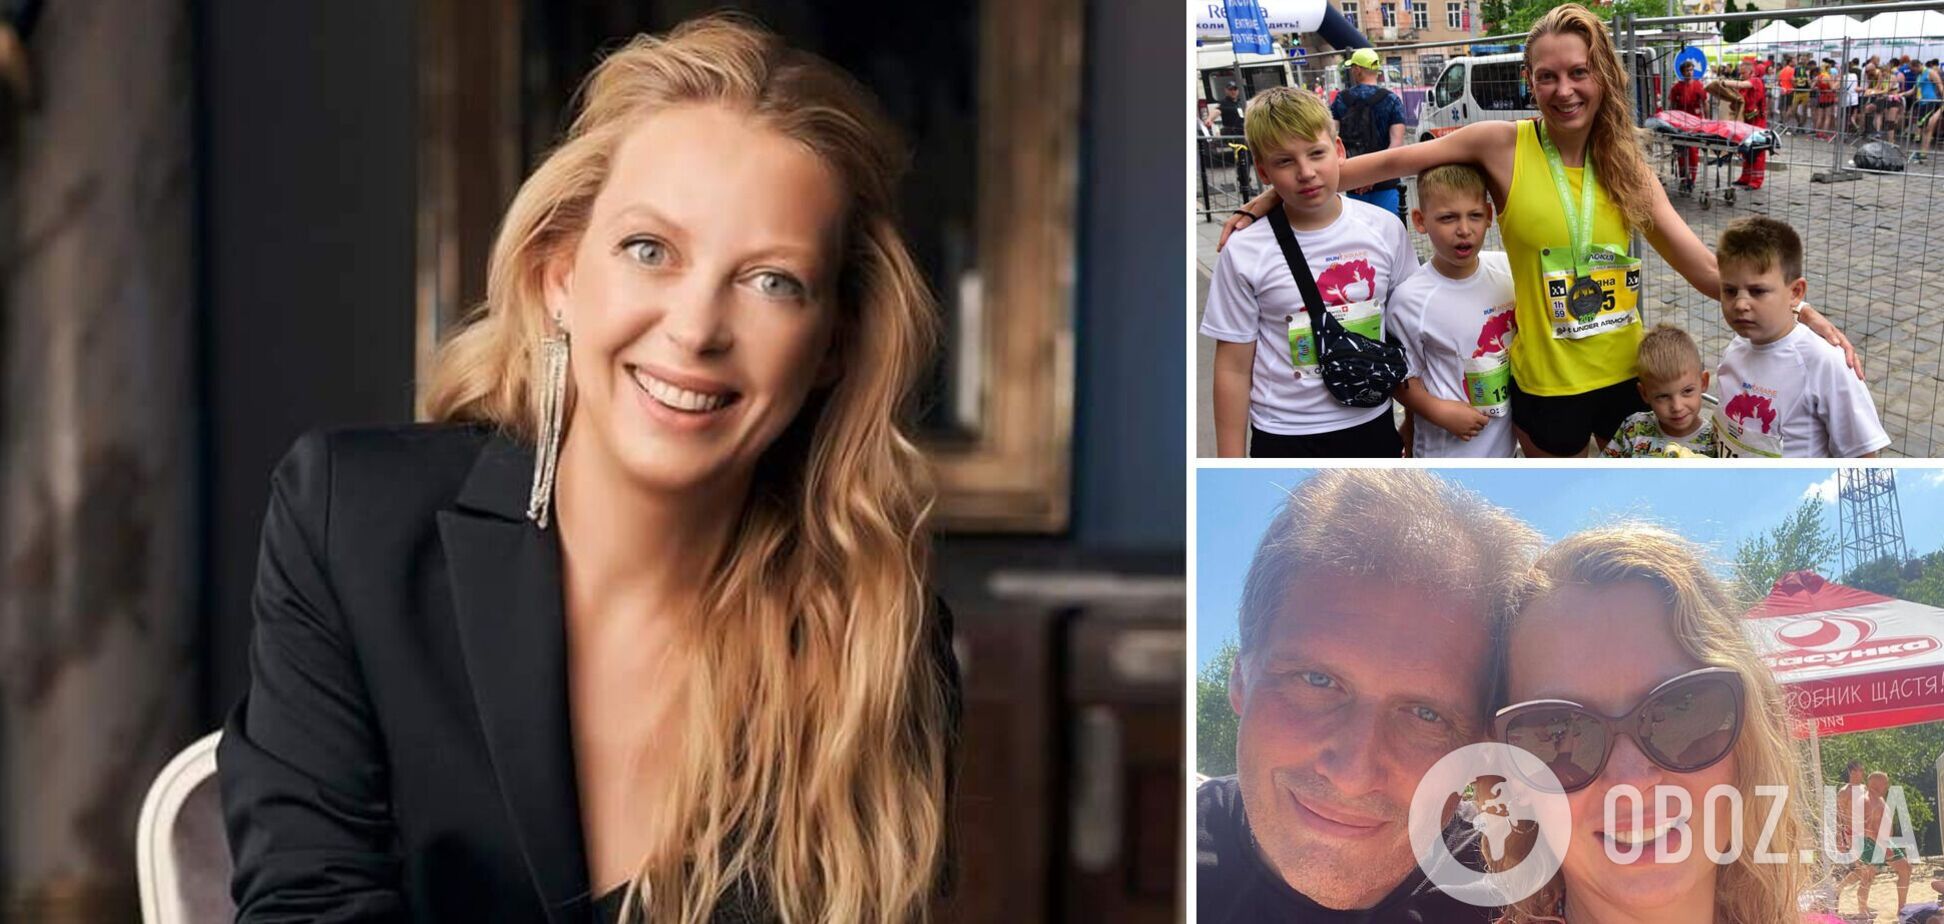 4 сына и 17 лет работы финдиректором: как живет самая красивая мама в Европе. Эксклюзив